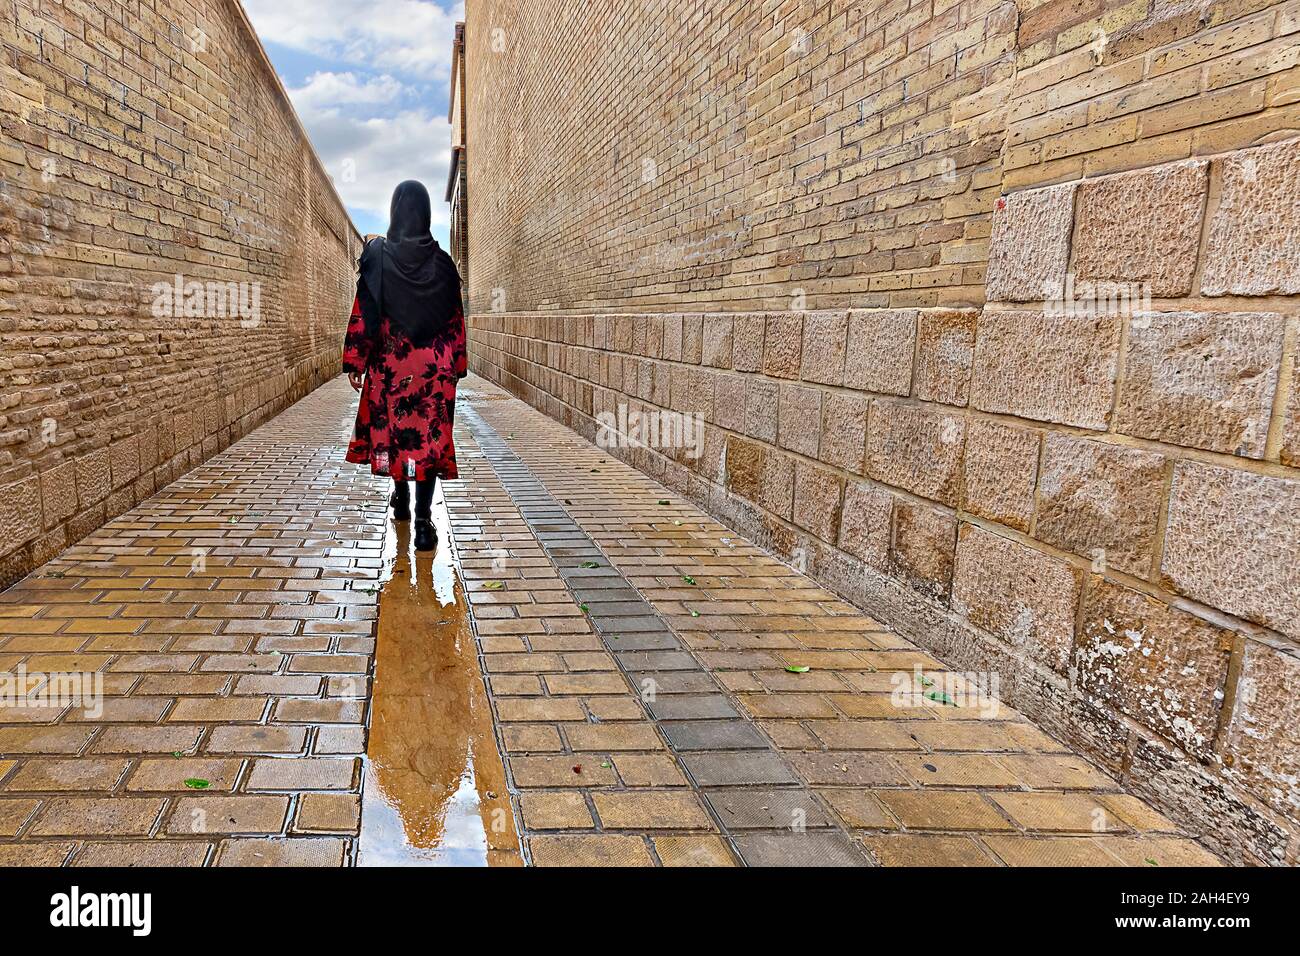 Femme locale marchant dans la rue pavée humide, Shiraz, Iran Banque D'Images